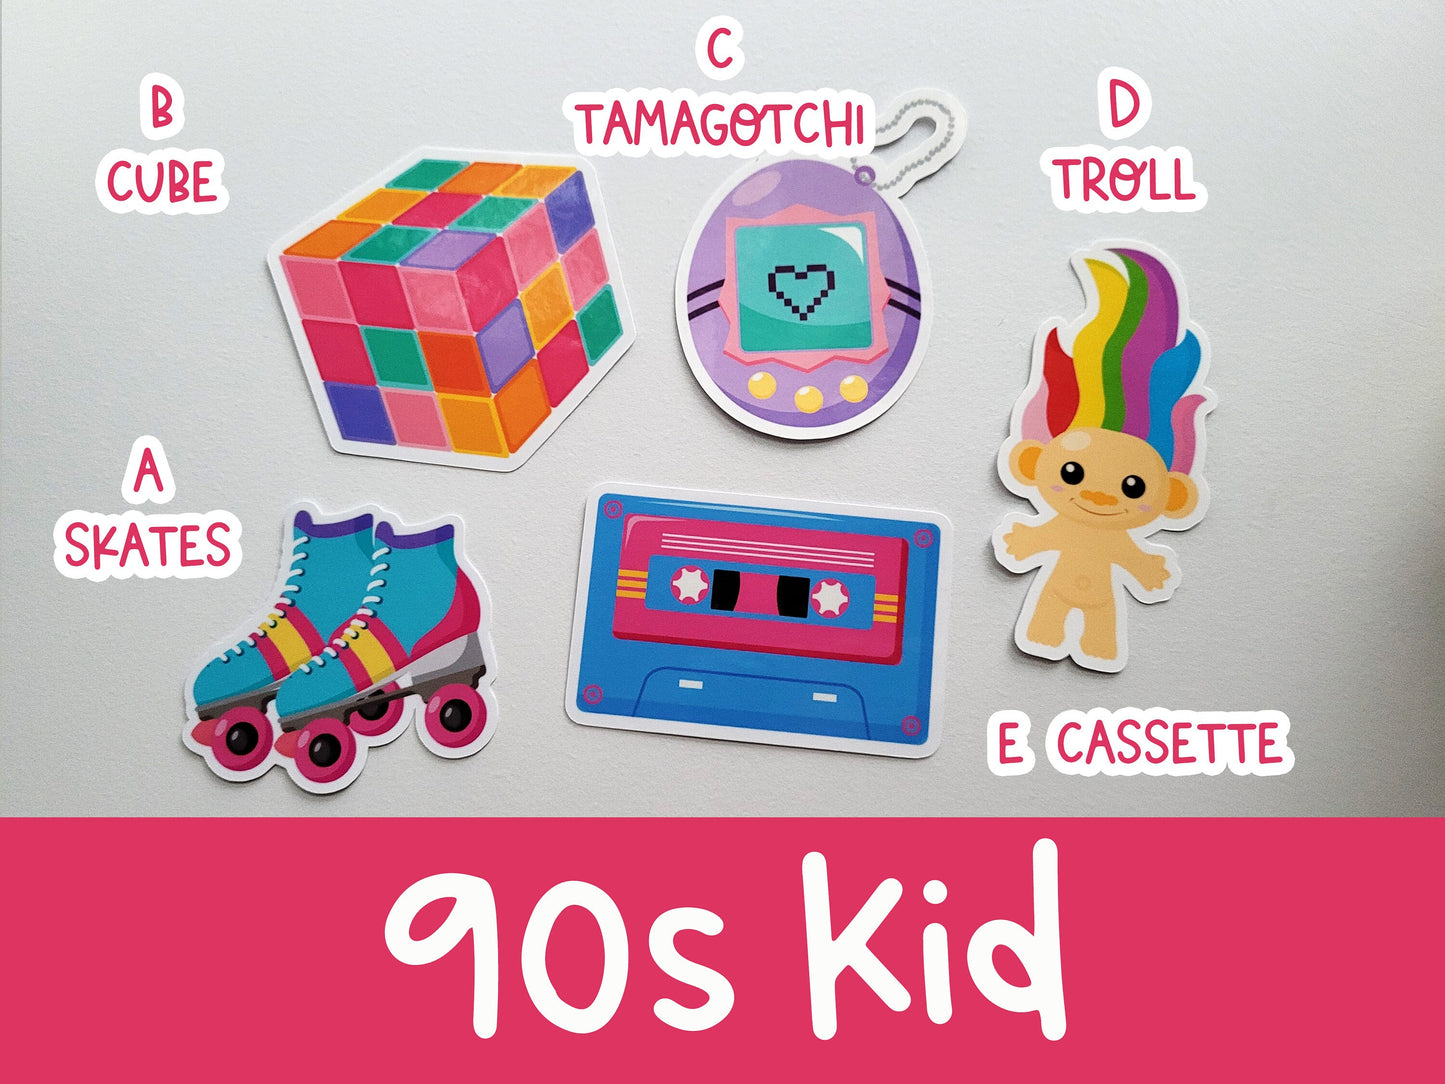 90s Kid Vinyl Sticker